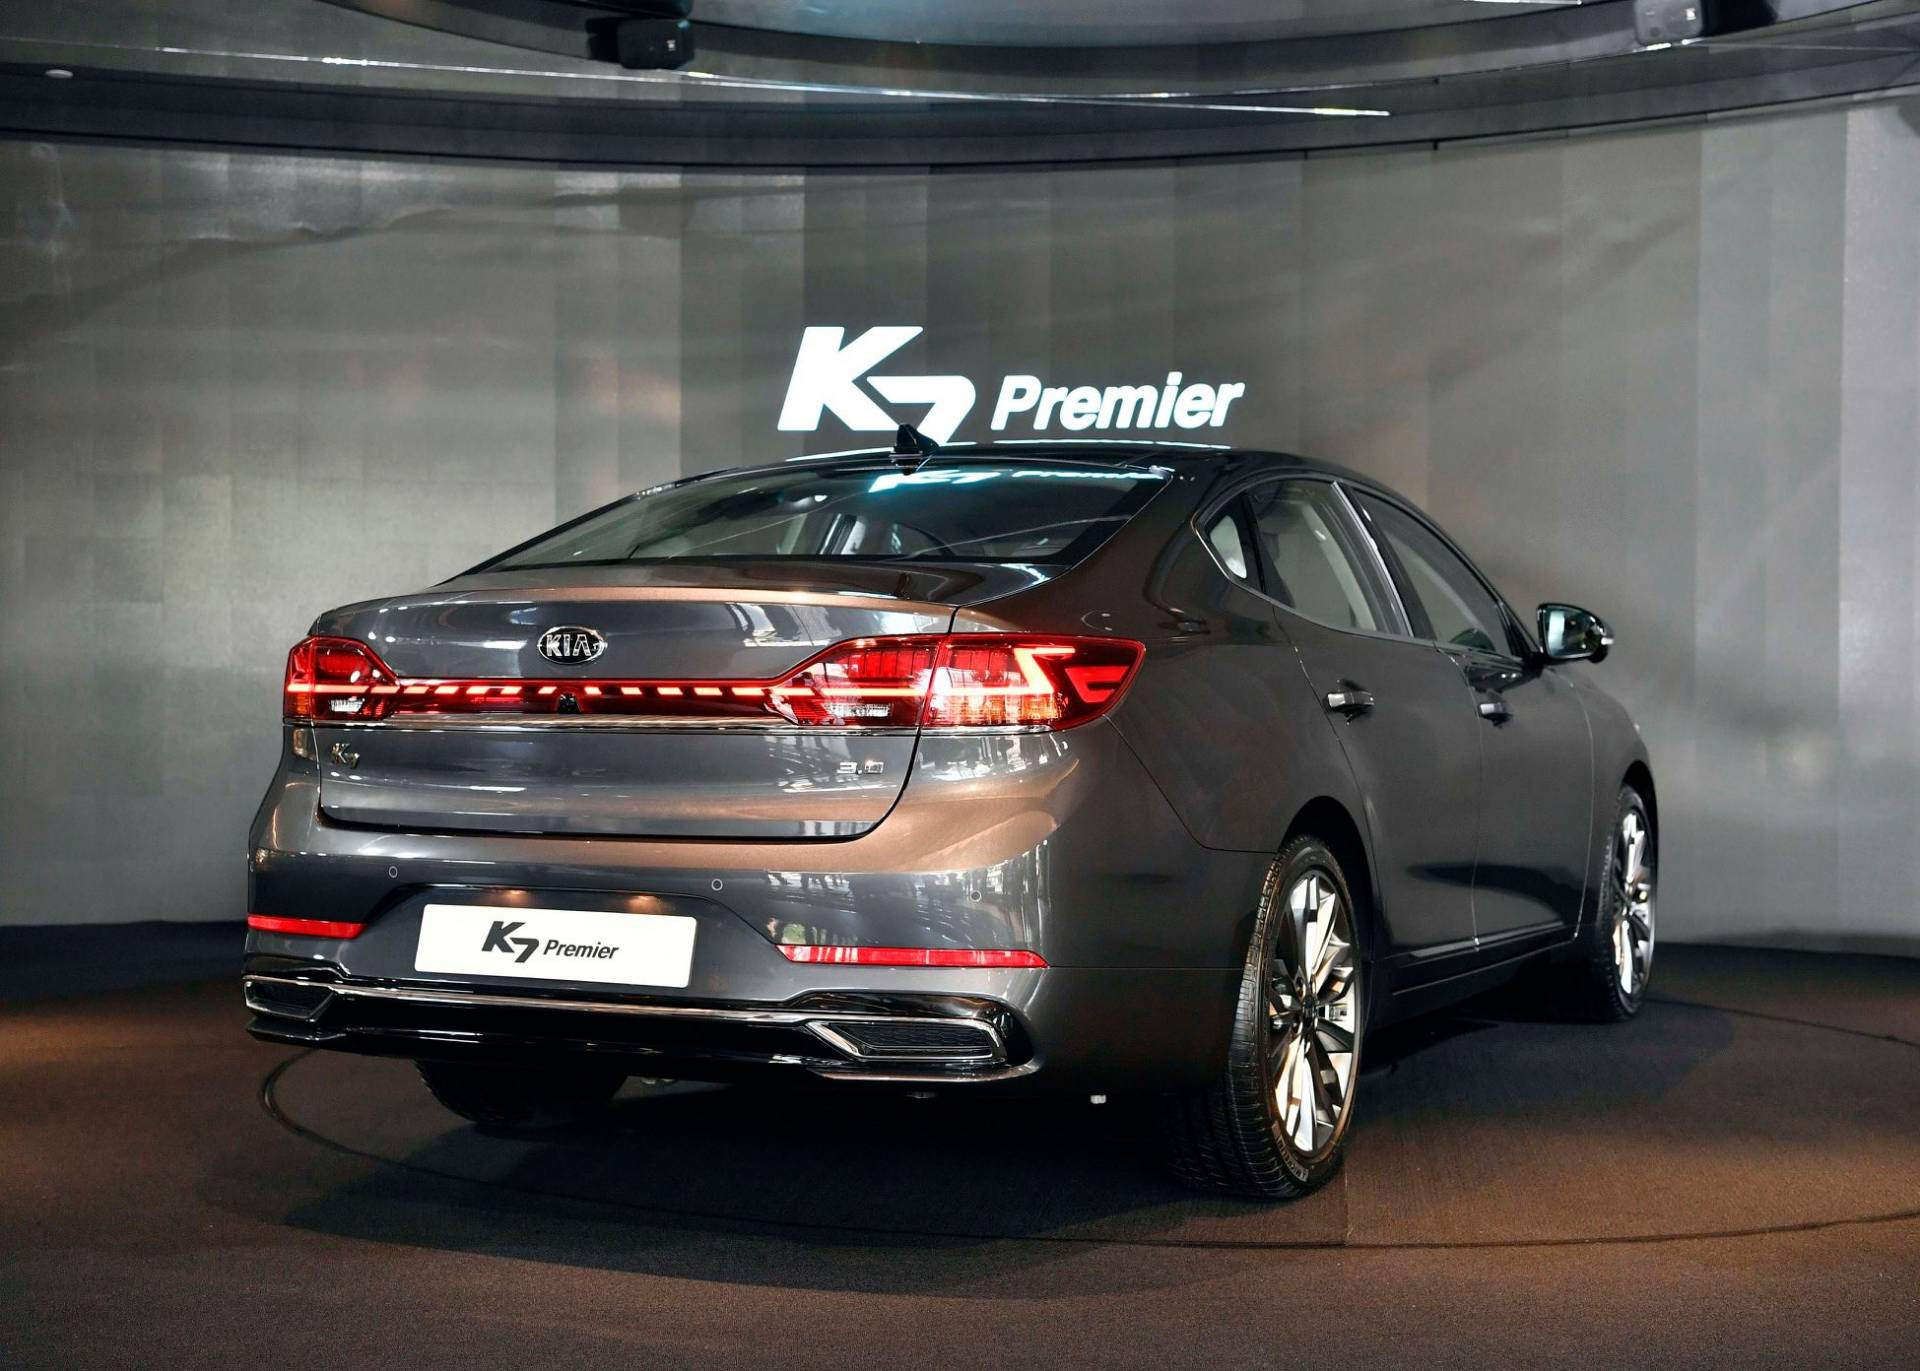 Facelifted 2020 Kia Cadenza Breaks Cover As The K7 Premier In Korea